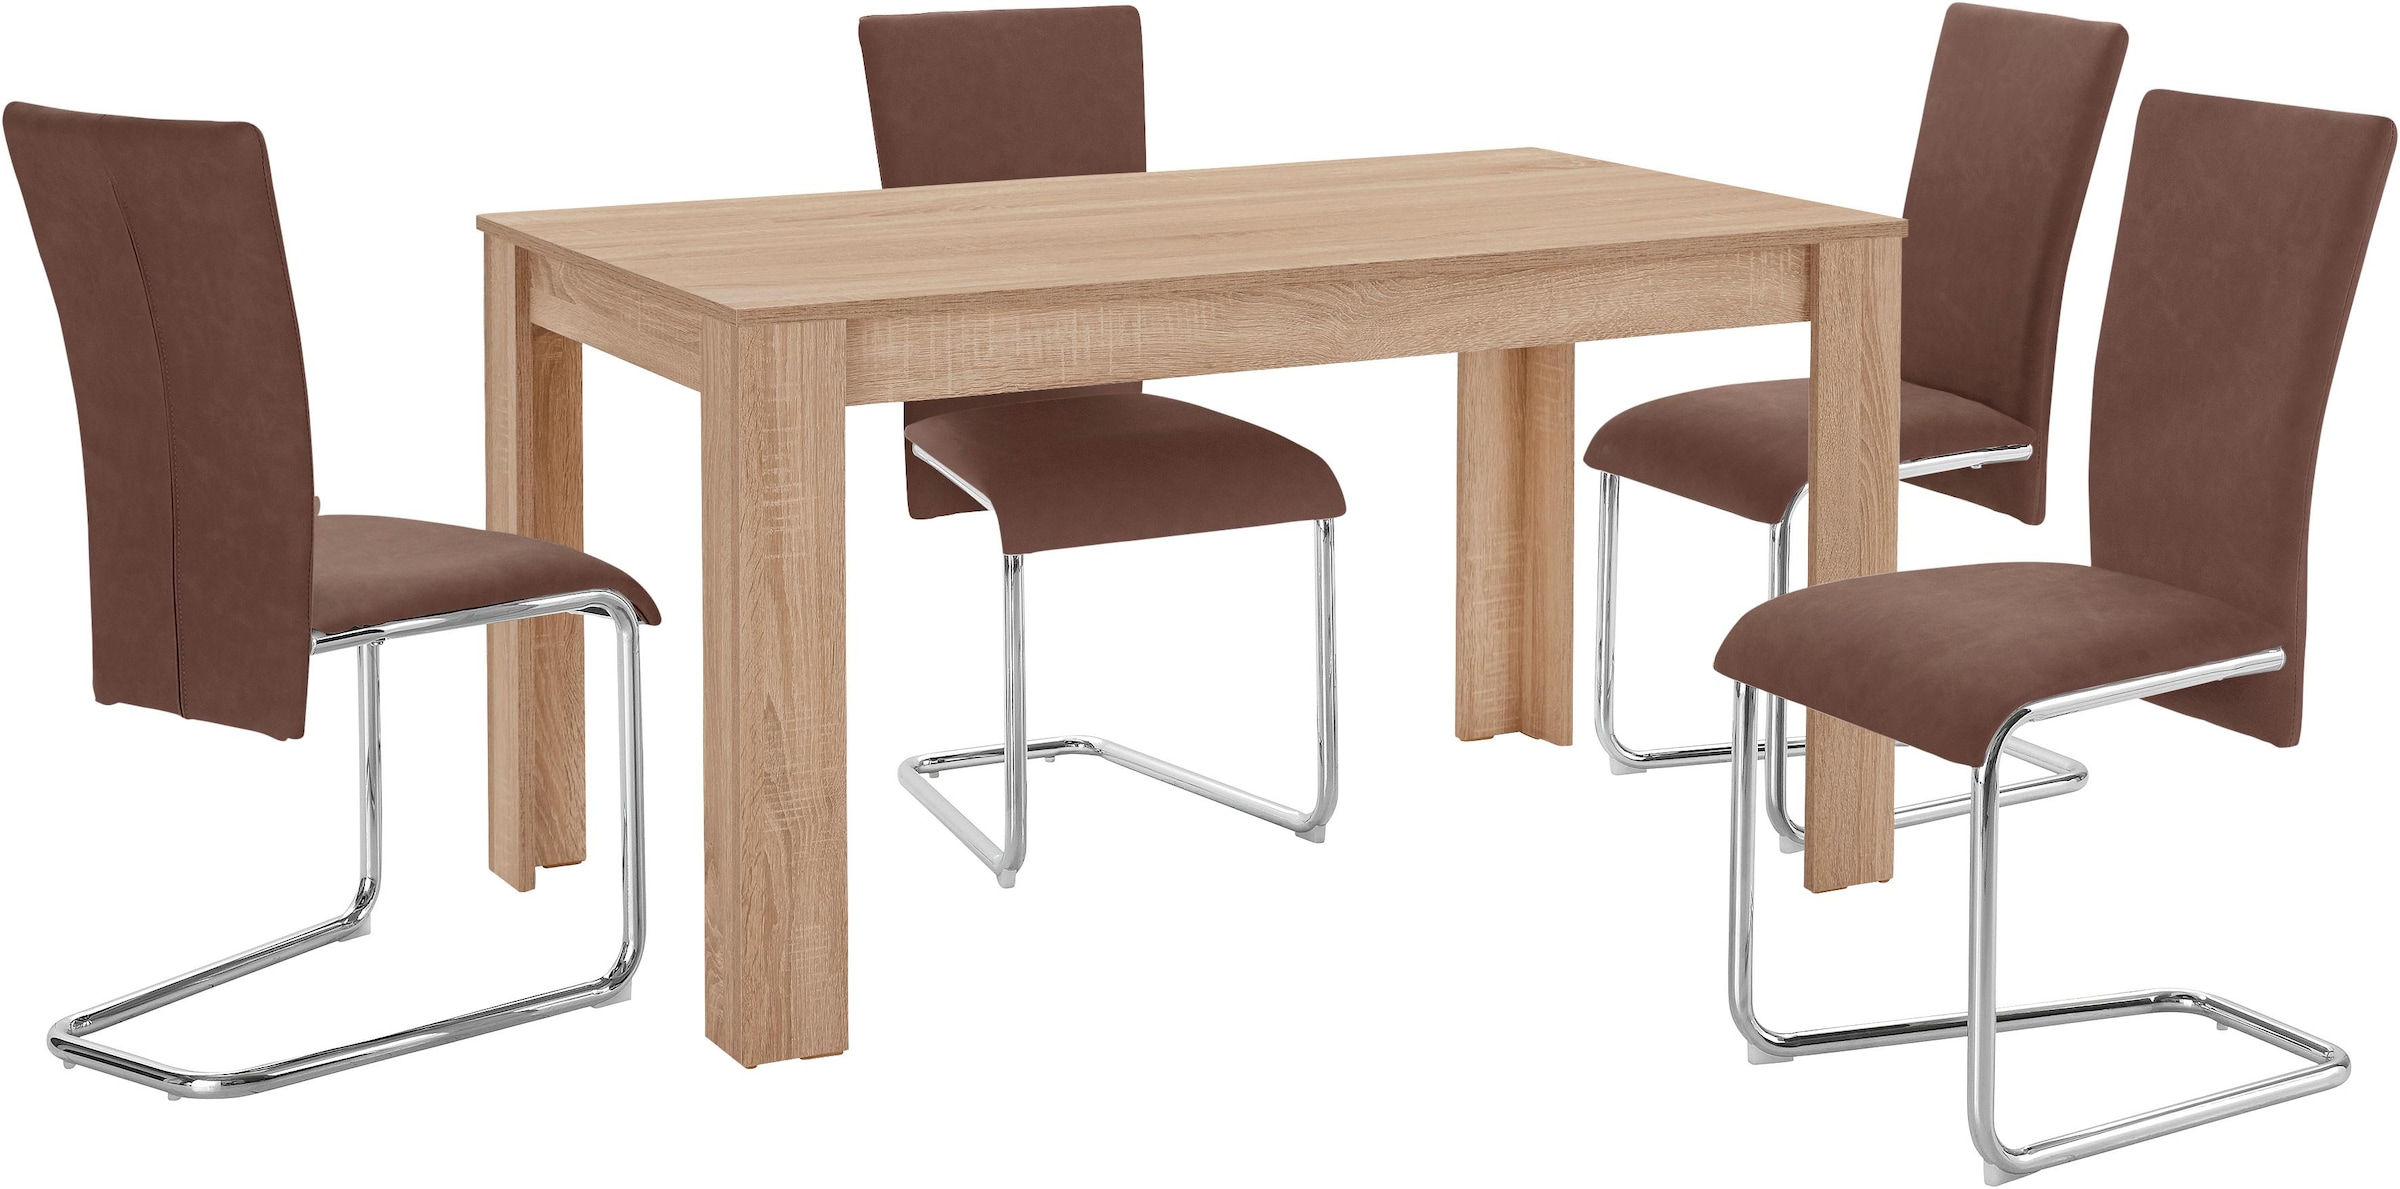 Homexperts Essgruppe »Nick3-Mulan«, (Set, 5 tlg.), mit 4 Stühlen, Tisch in  eichefarben sägerau, Breite 140 cm bequem kaufen